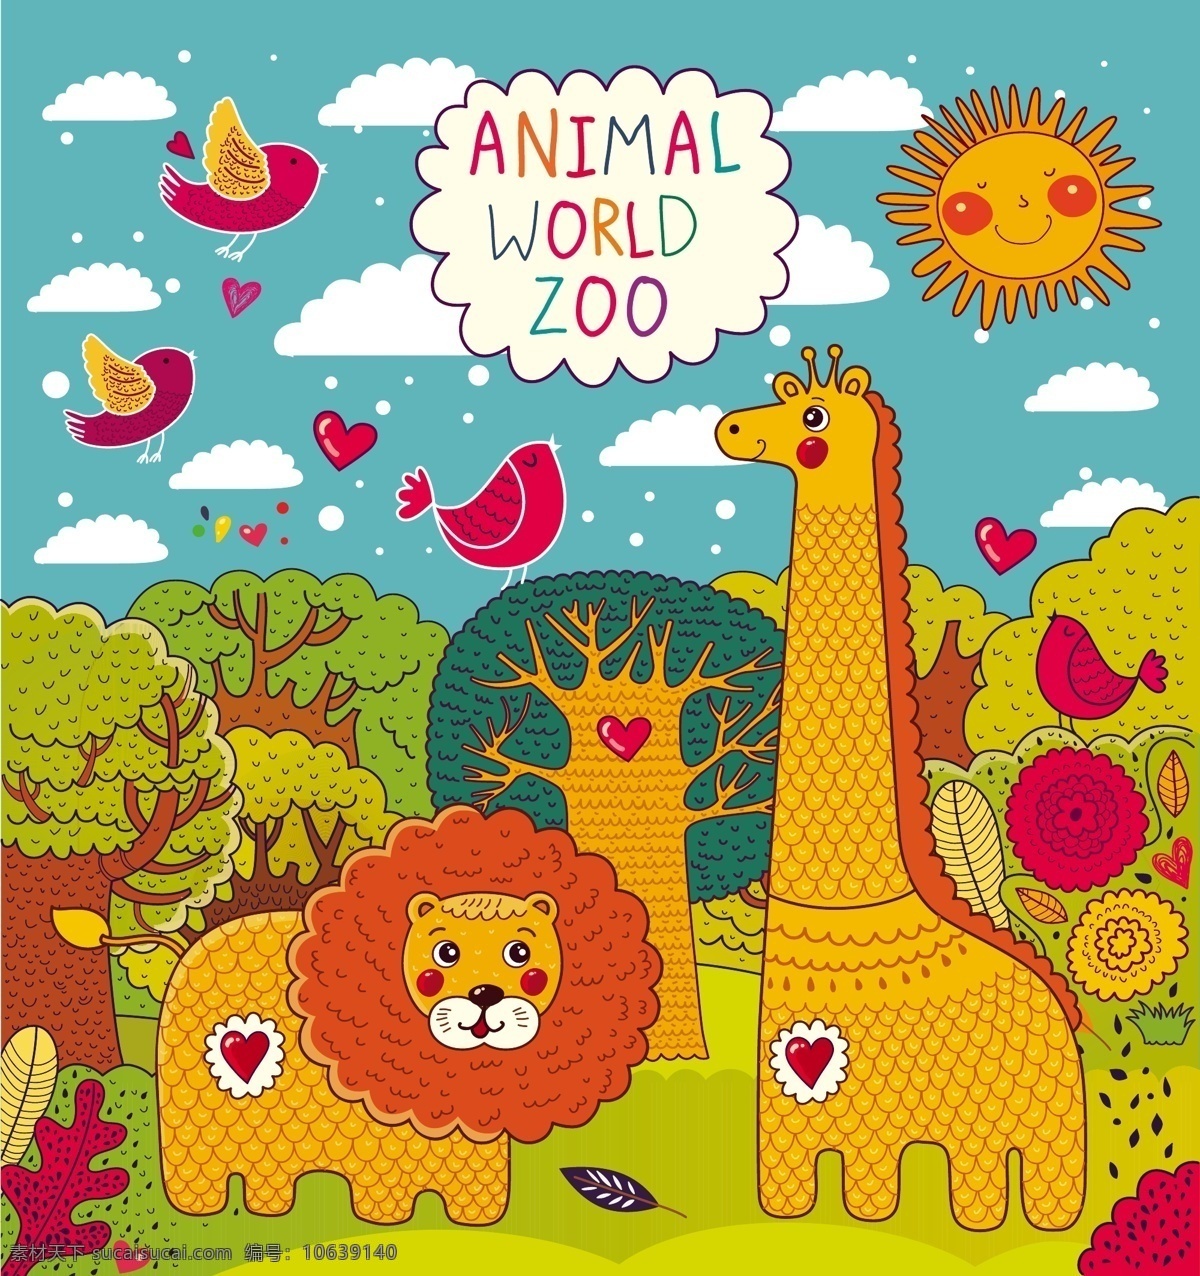 卡通 狮子 长颈鹿 背景 矢量图 动物园 花朵 森林 树木 太阳 小鸟 云朵 其他矢量图